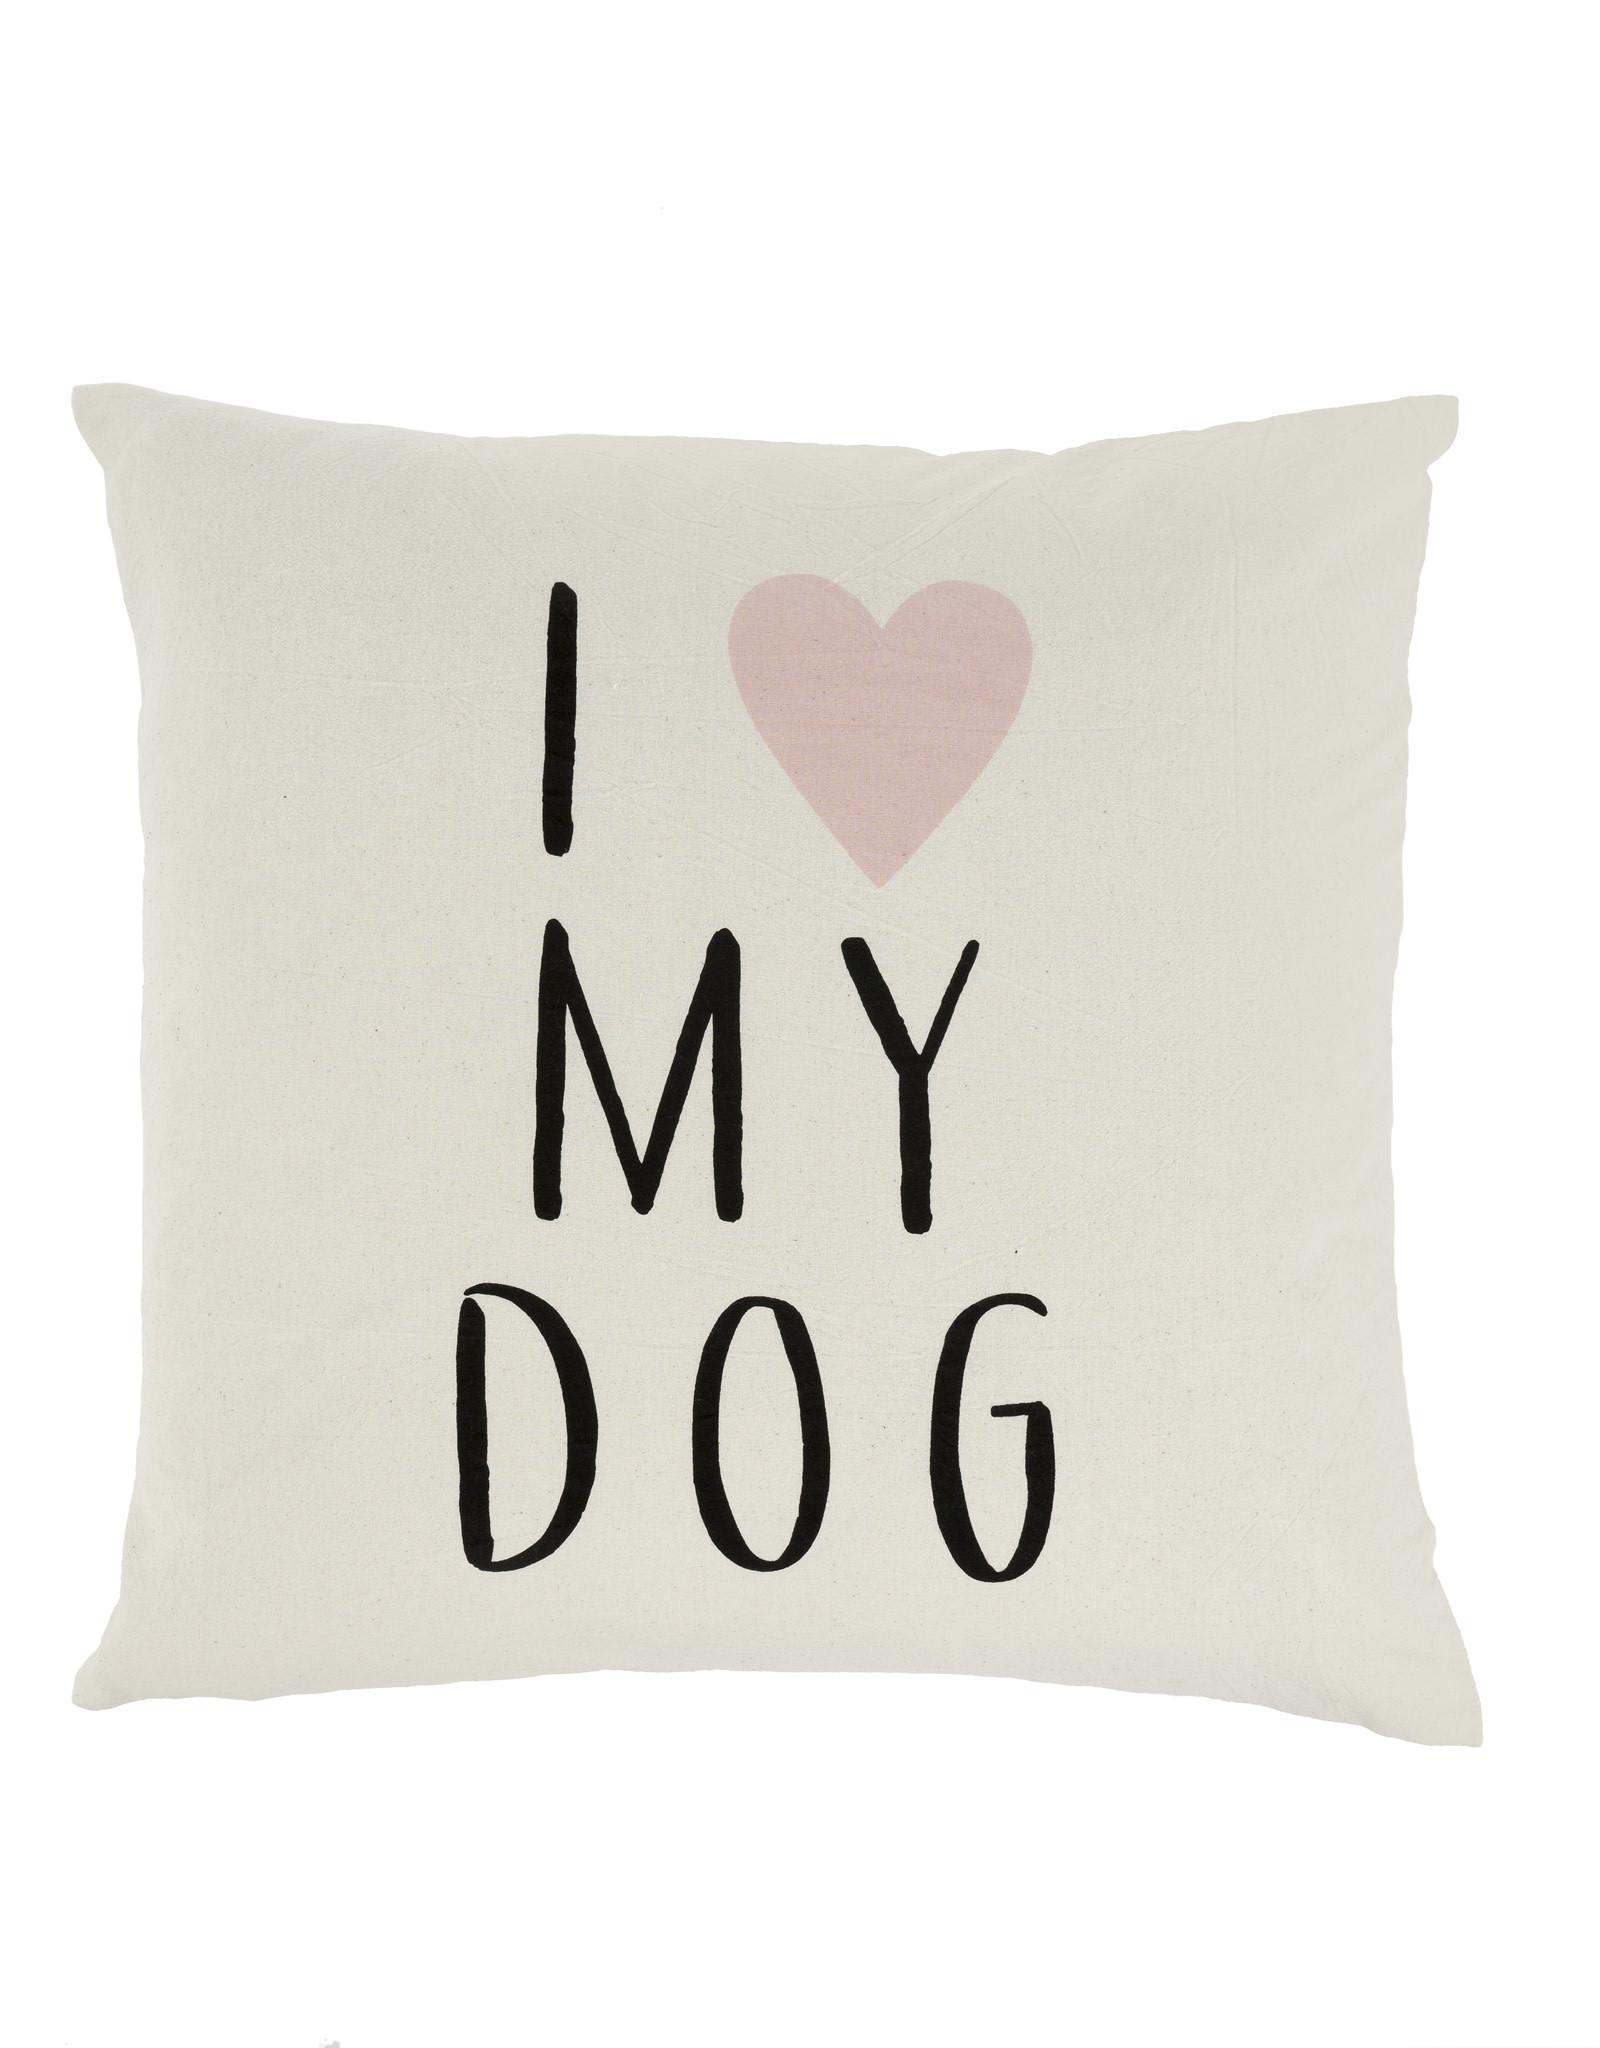 Indaba Trading Co Indaba Cushion I Love My Dog 20x20